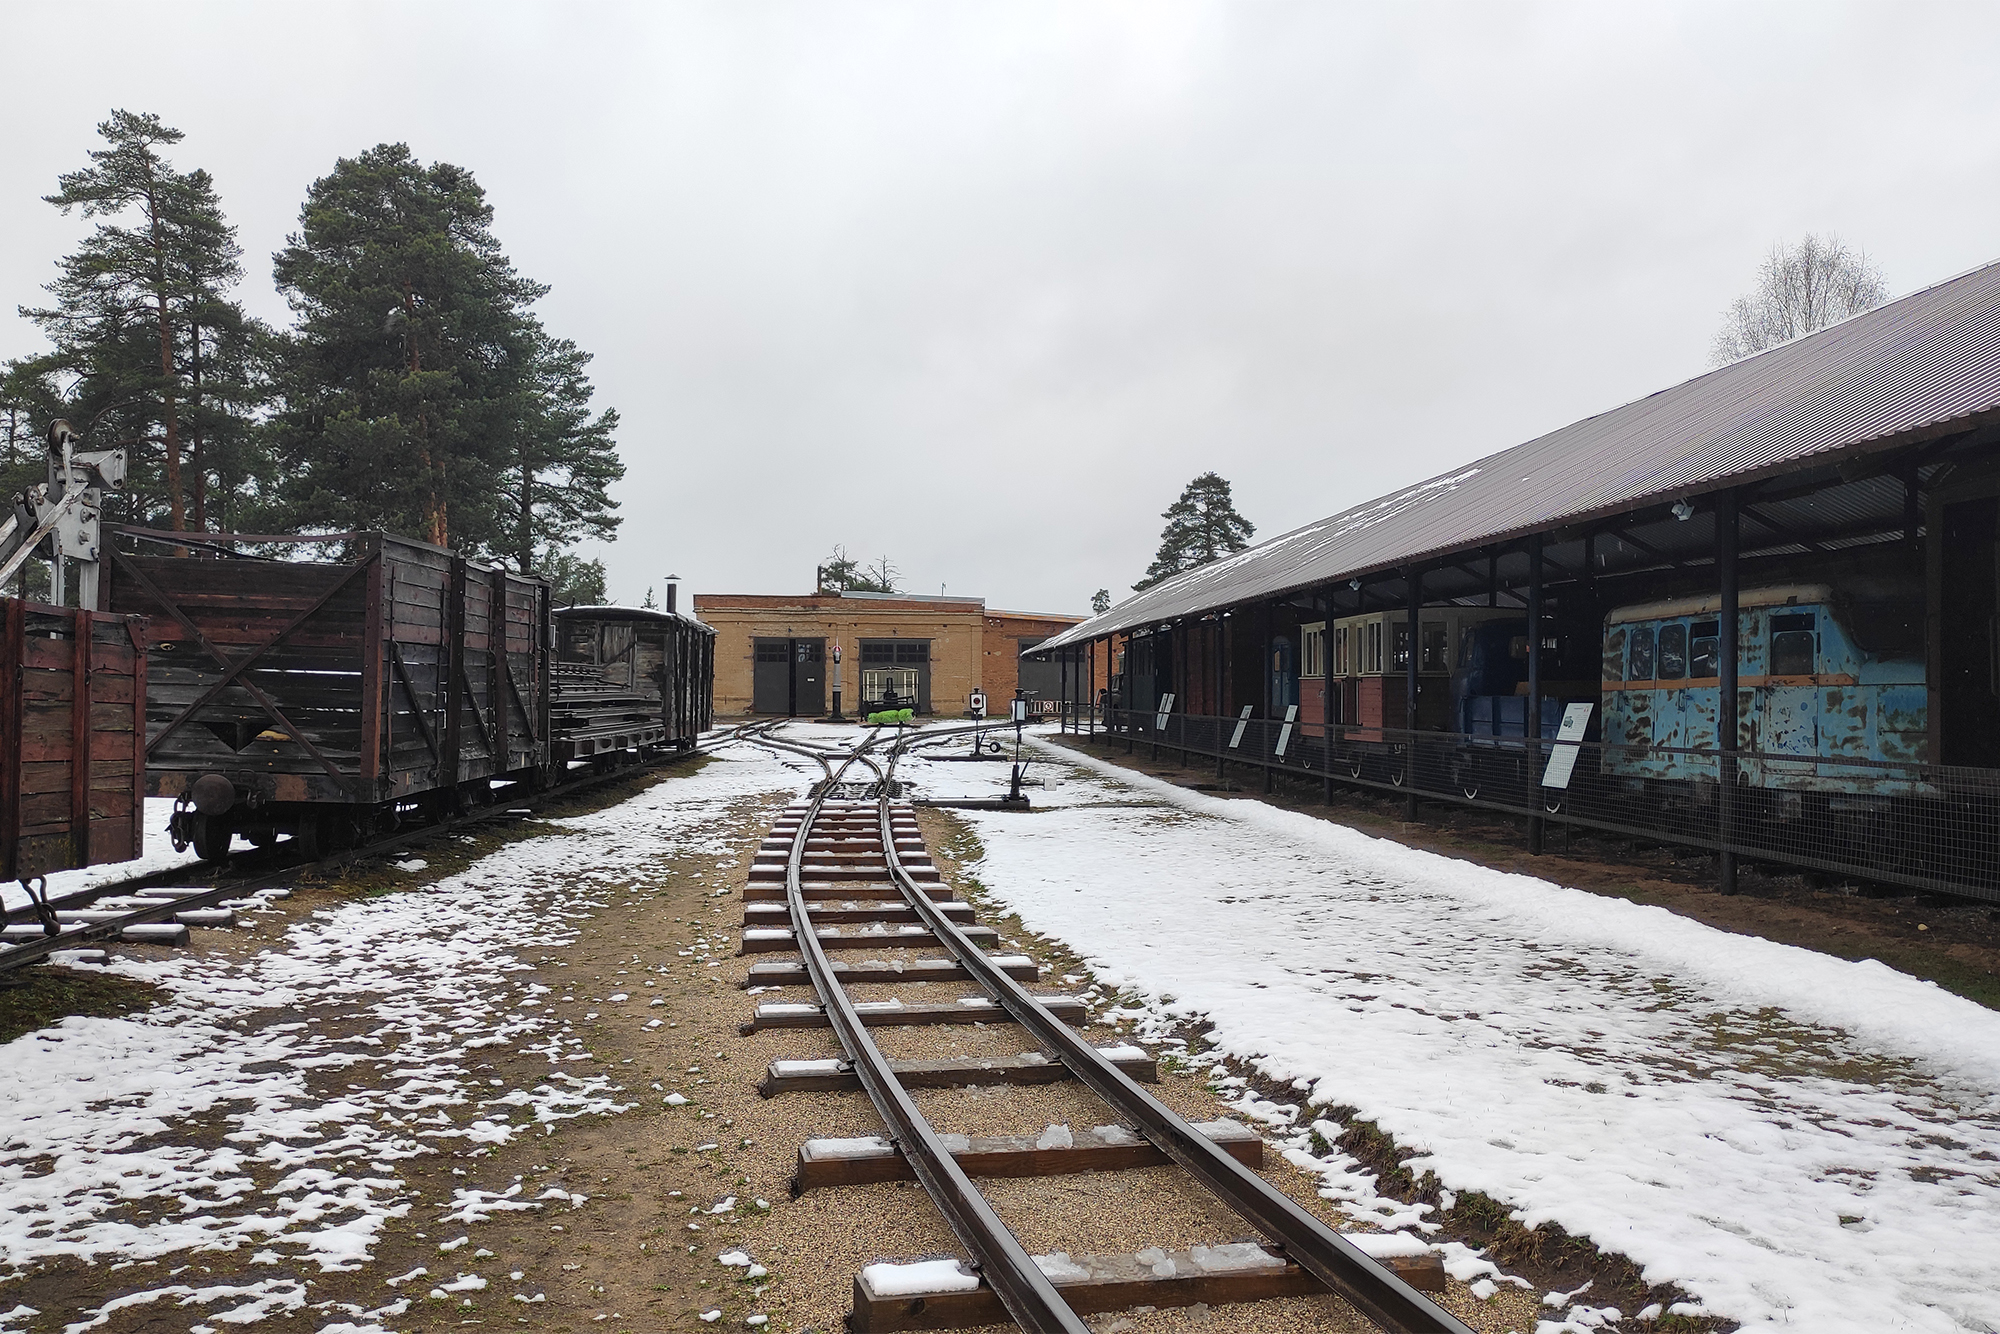 Снаружи железнодорожный музей похож на полузаброшенную станцию. Он работает со среды по воскресенье с 10:00 до 18:00, зимой — до 17:00